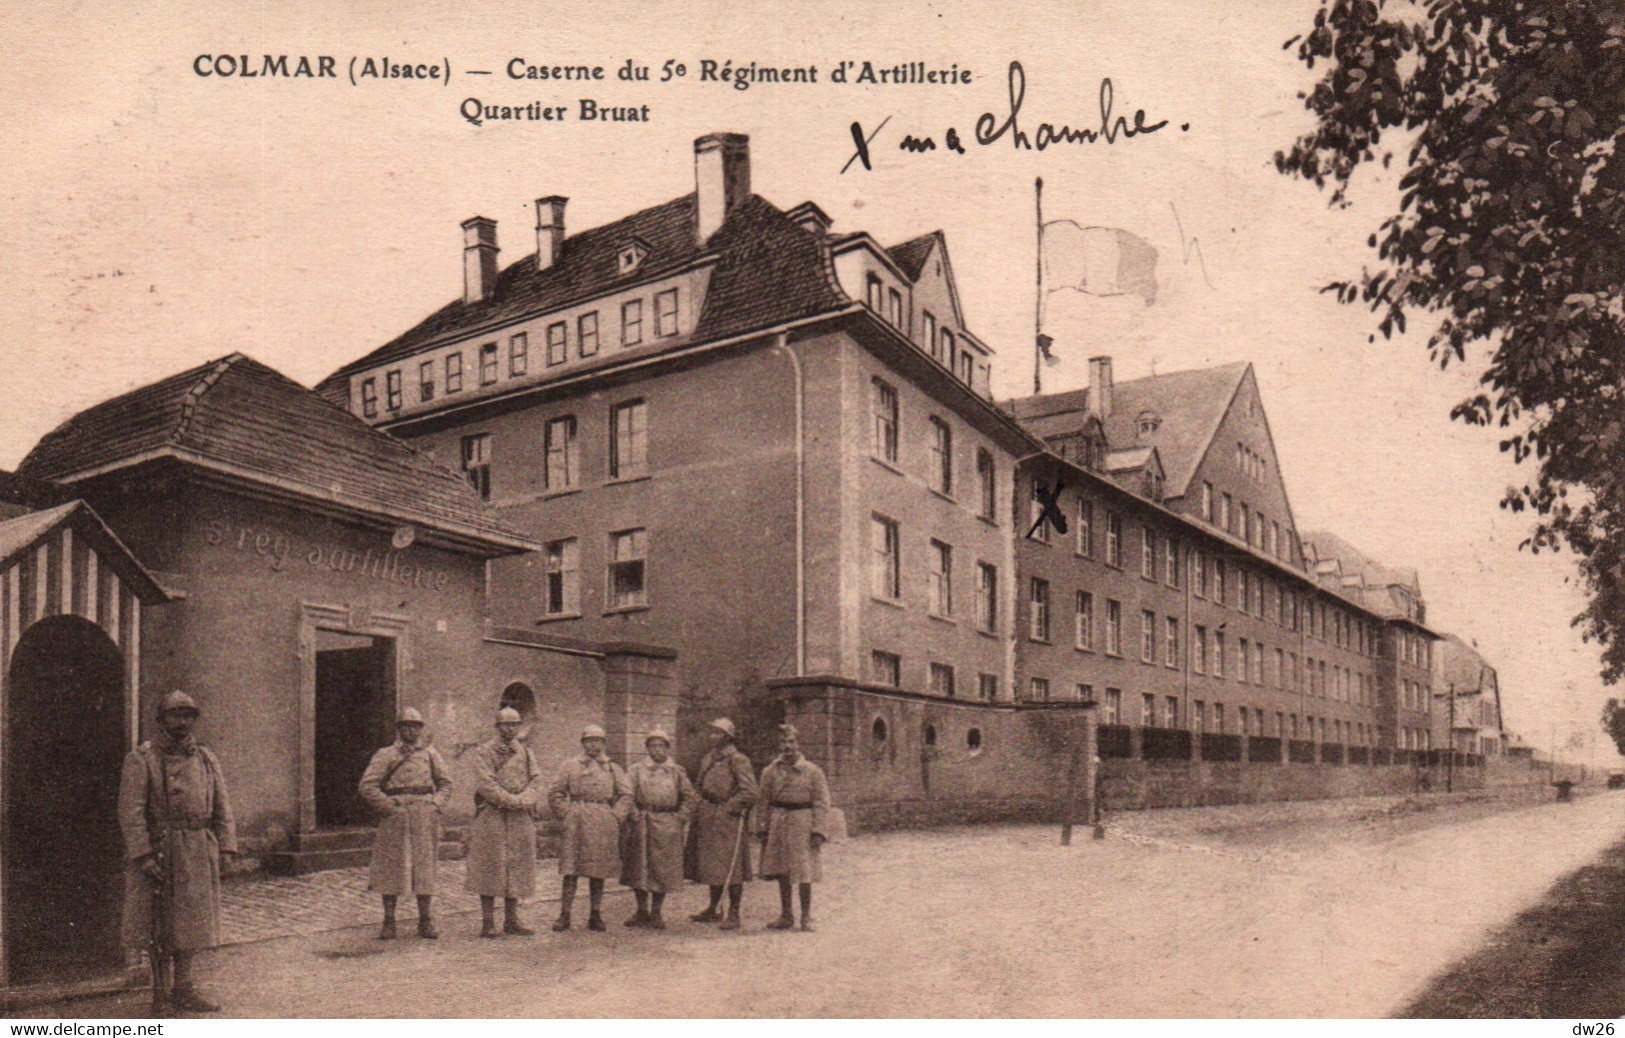 Colmar (Alsace) Caserne Du 5e Régiment D'Artillerie - Quartier Bruat, Militaires En Faction - Edition Kuntz - Barracks